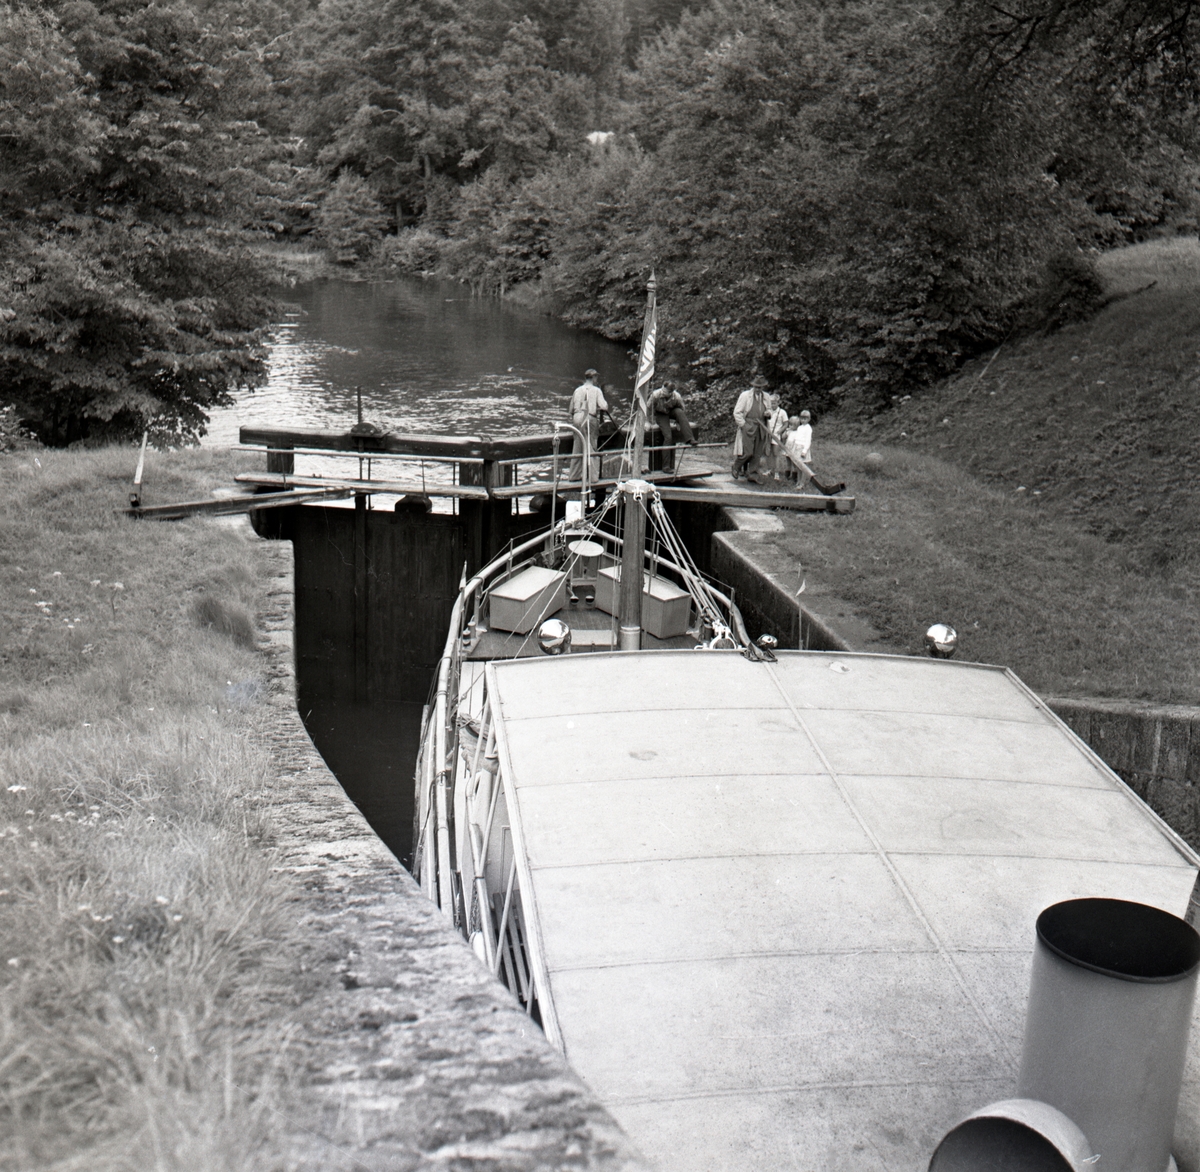 Båten har sjunkit färdigt. Klar för avfärd mot Linköping. Kinda kanal öppnades som farled 1871 och certifierades året därpå.

Extern upplysning: Bilden föreställer Kinda som upphörde sin trafik 1957, bilden är mer troligt tagen på 1950T.
Hamra slussar.